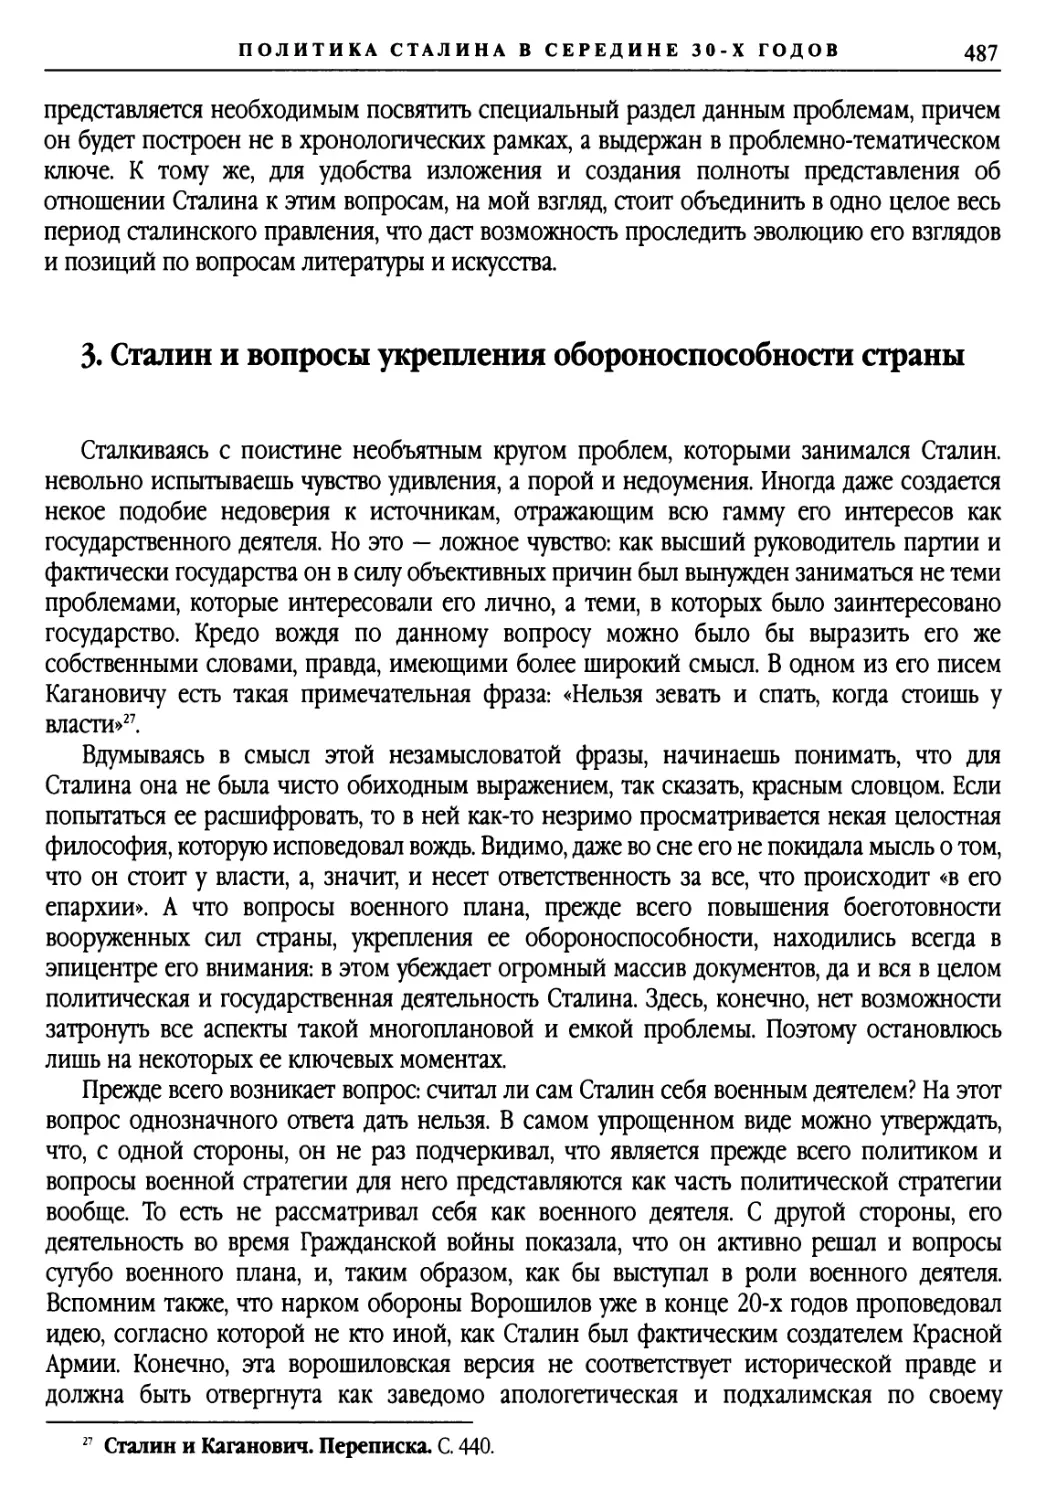 3. Сталин и вопросы укрепления обороноспособности страны